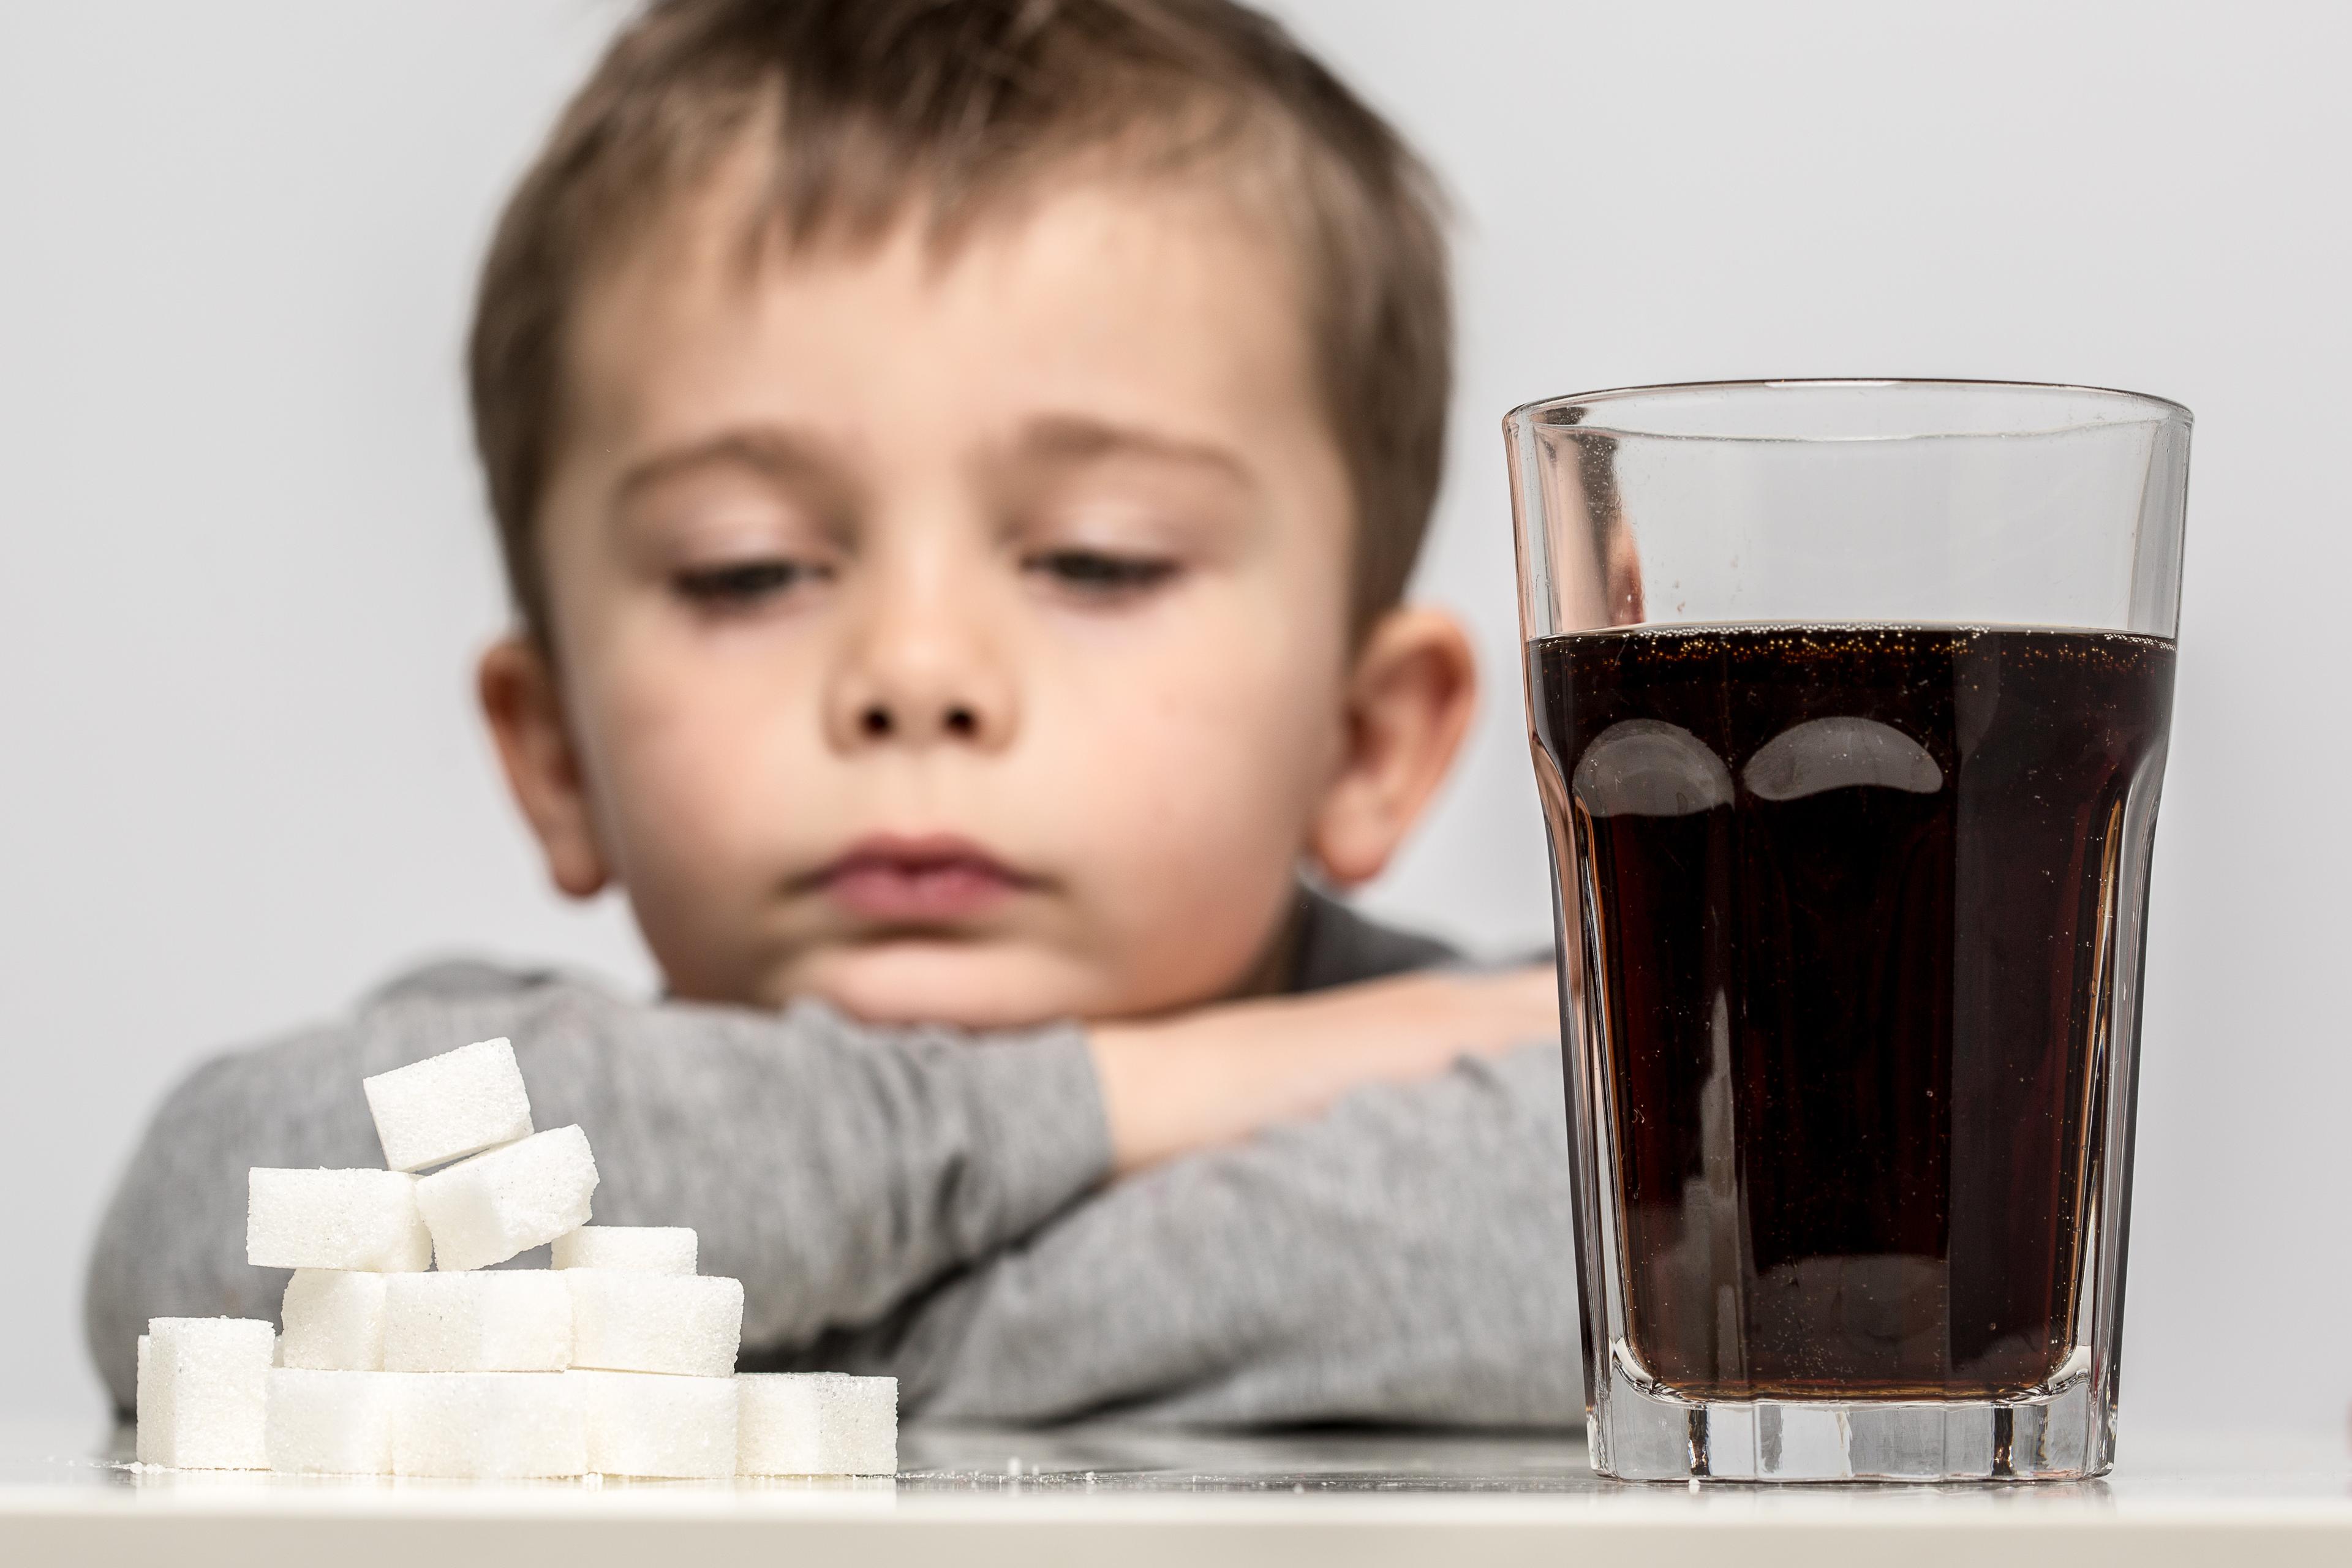 Svensken får fortfarande i sig nästan fem gånger mer socker än WHO’s rekommenderat dagliga intag.